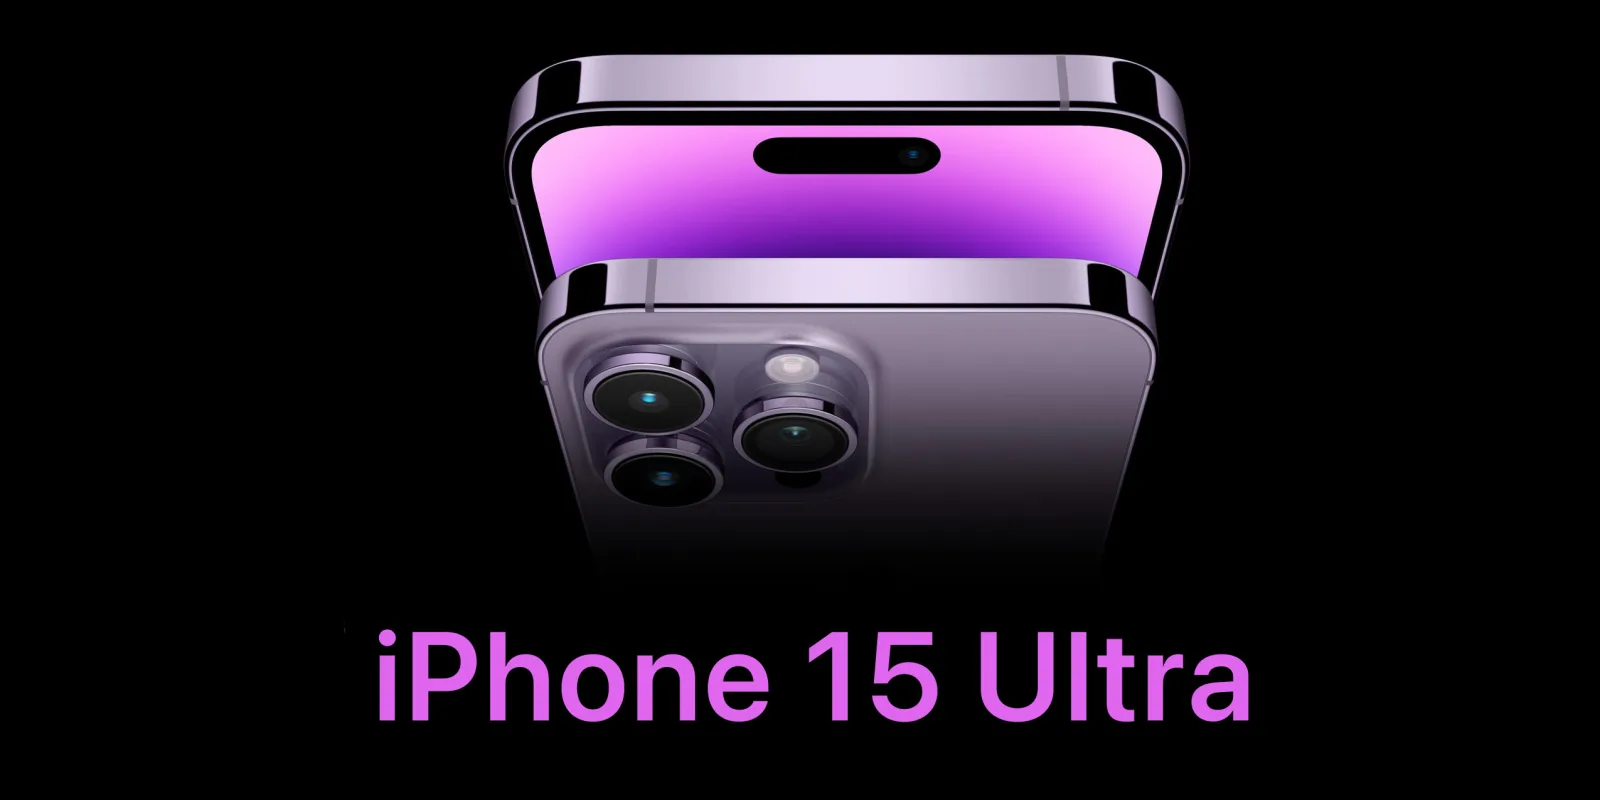 تسريبات جوال آيفون الخرافي القادم iphone 15 ultra تكشف عن مواصفات تجعله الأفضل والأقوى